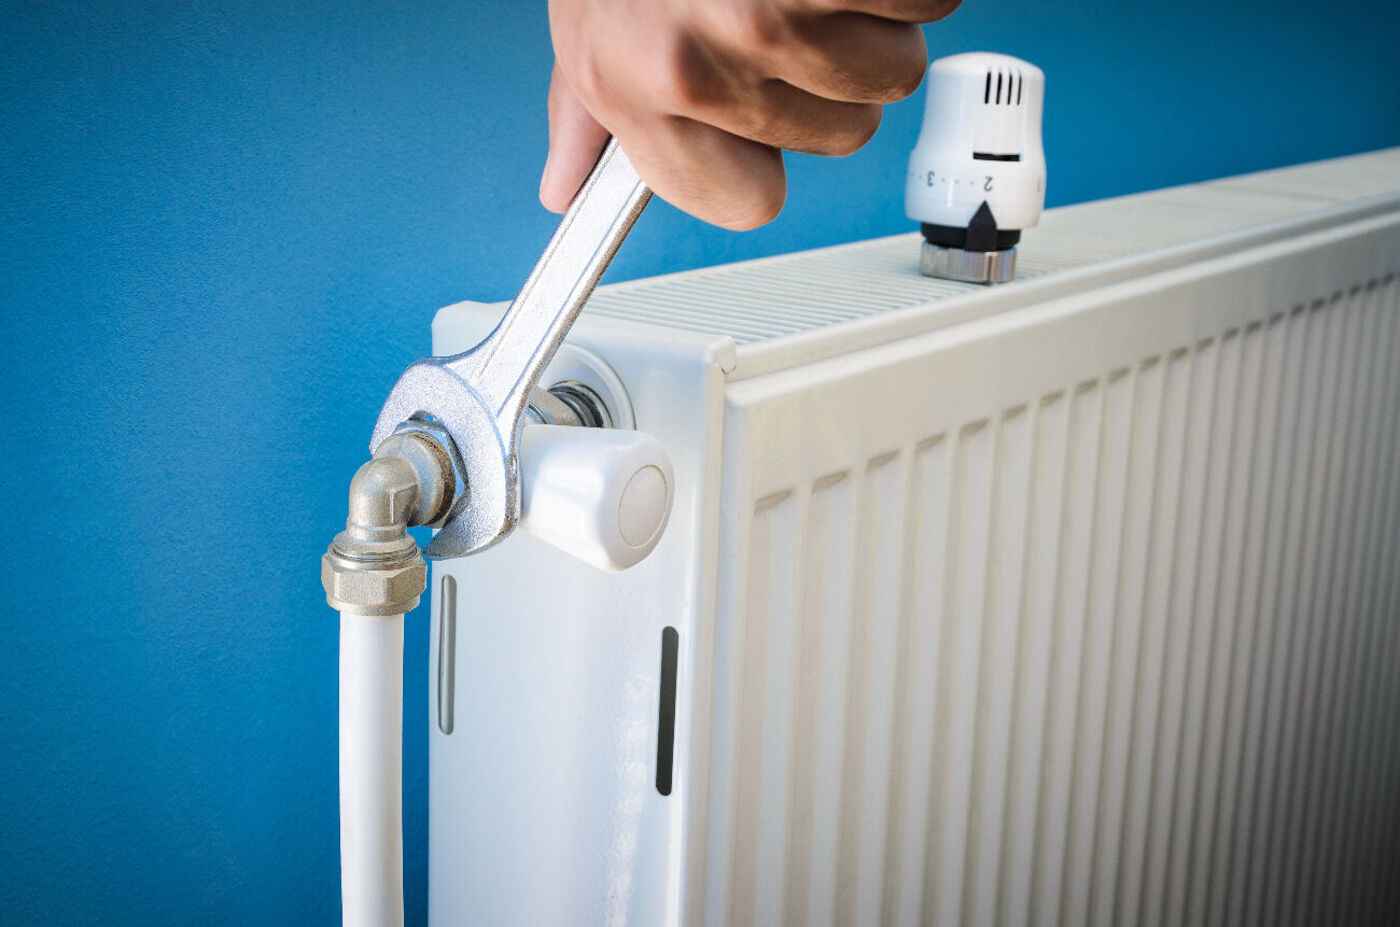 Réparation de radiateur : Trouvez une solution pour un radiateur non chauffant